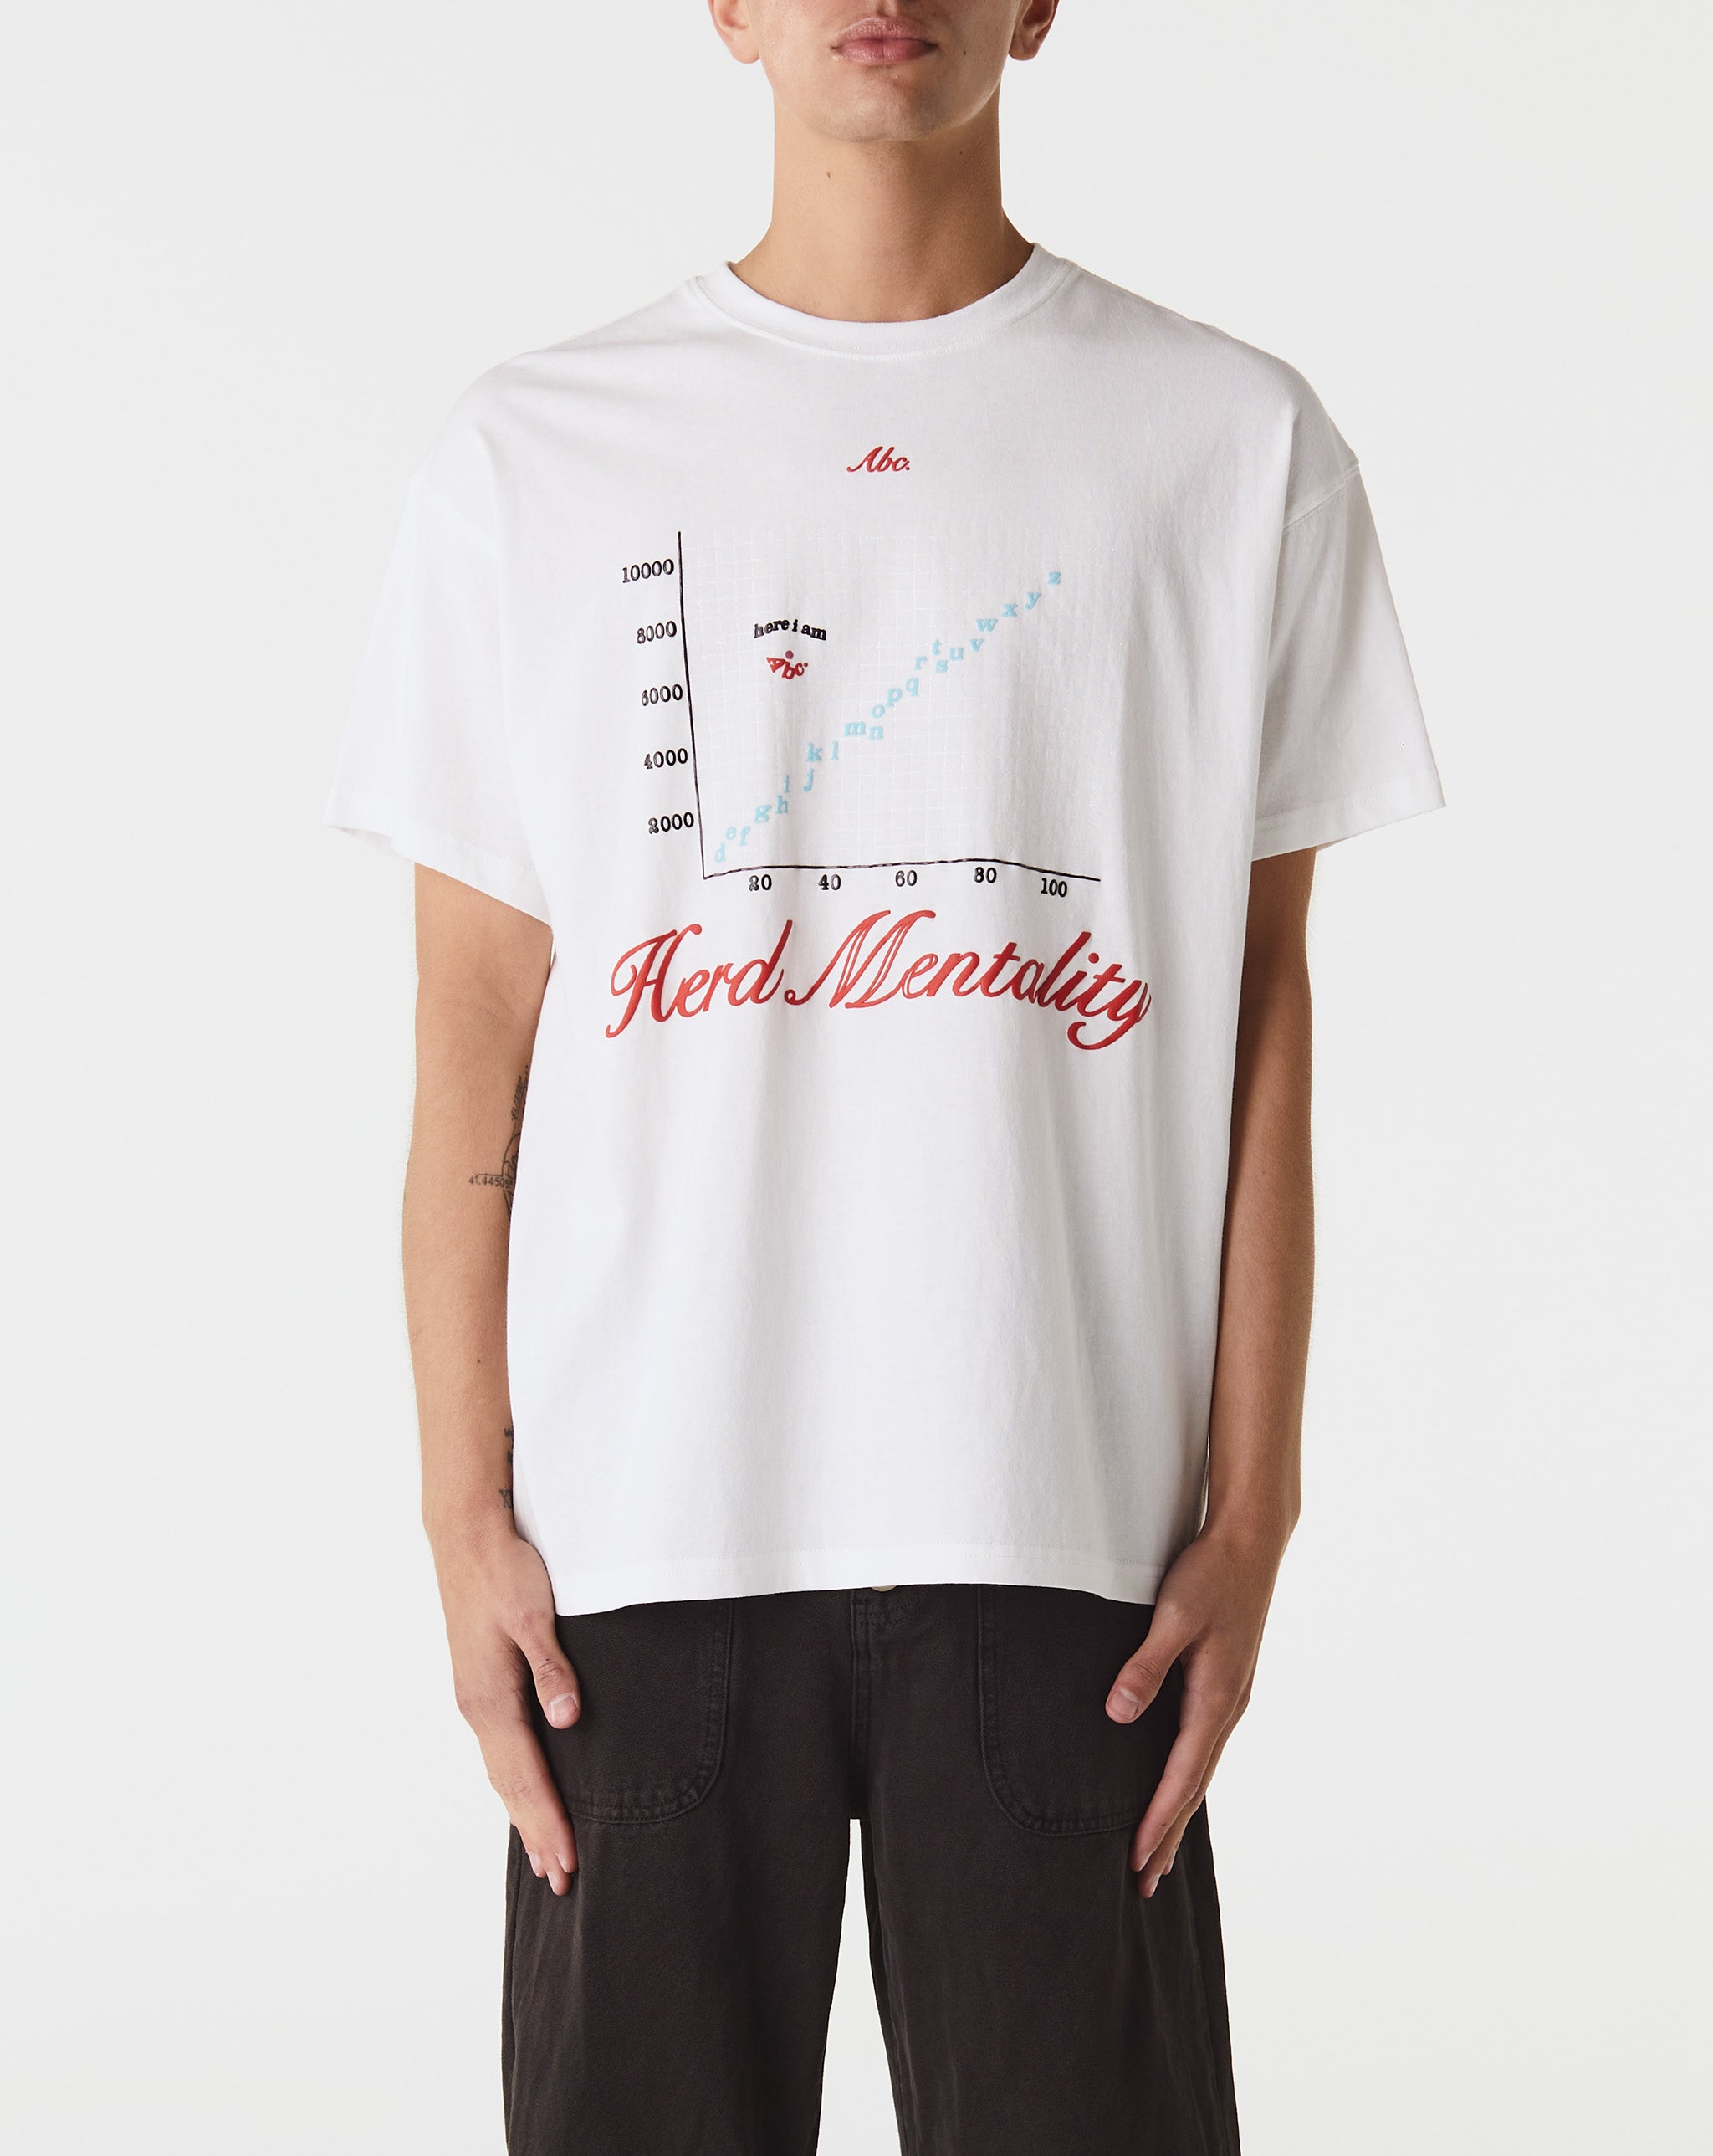 Stan Smith Lux Herd Mentality T-Shirt  - Cheap Urlfreeze Jordan outlet